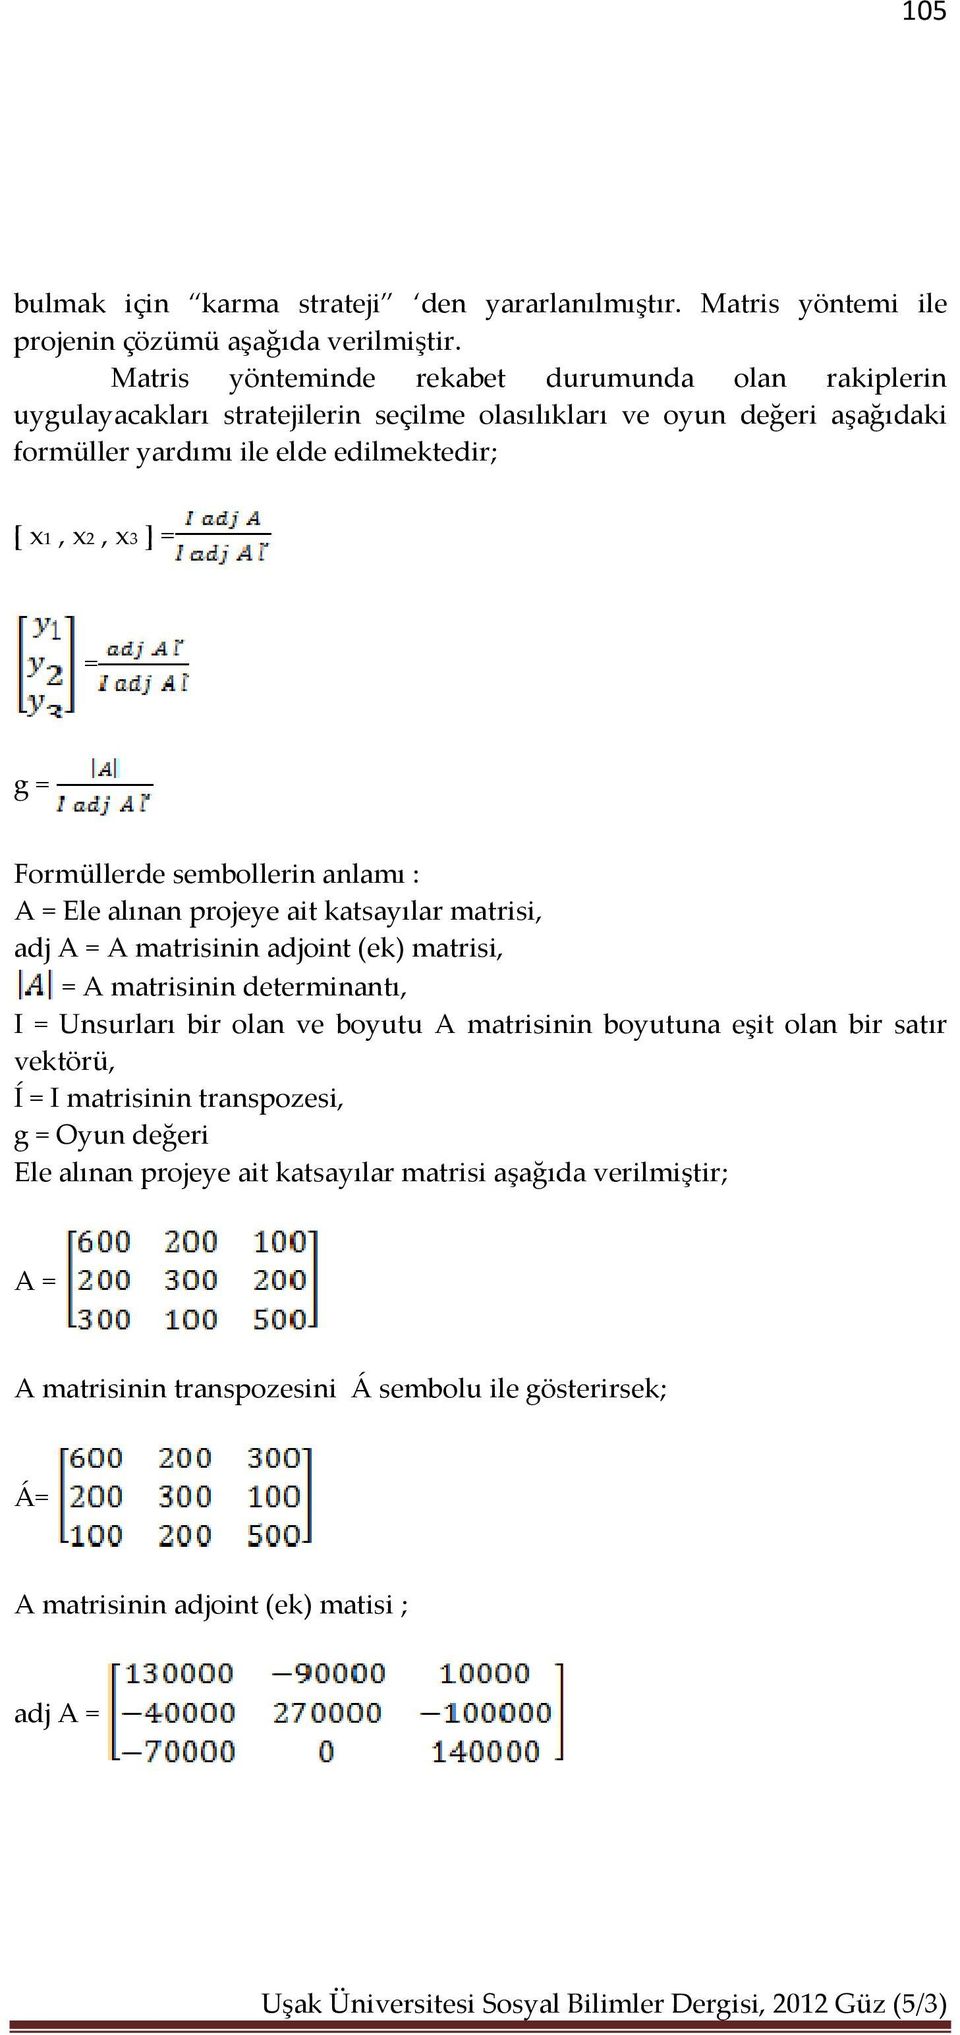 g = Formüllerde sembollerin anlamı : A = Ele alınan projeye ait katsayılar matrisi, adj A = A matrisinin adjoint (ek) matrisi, = A matrisinin determinantı, I = Unsurları bir olan ve